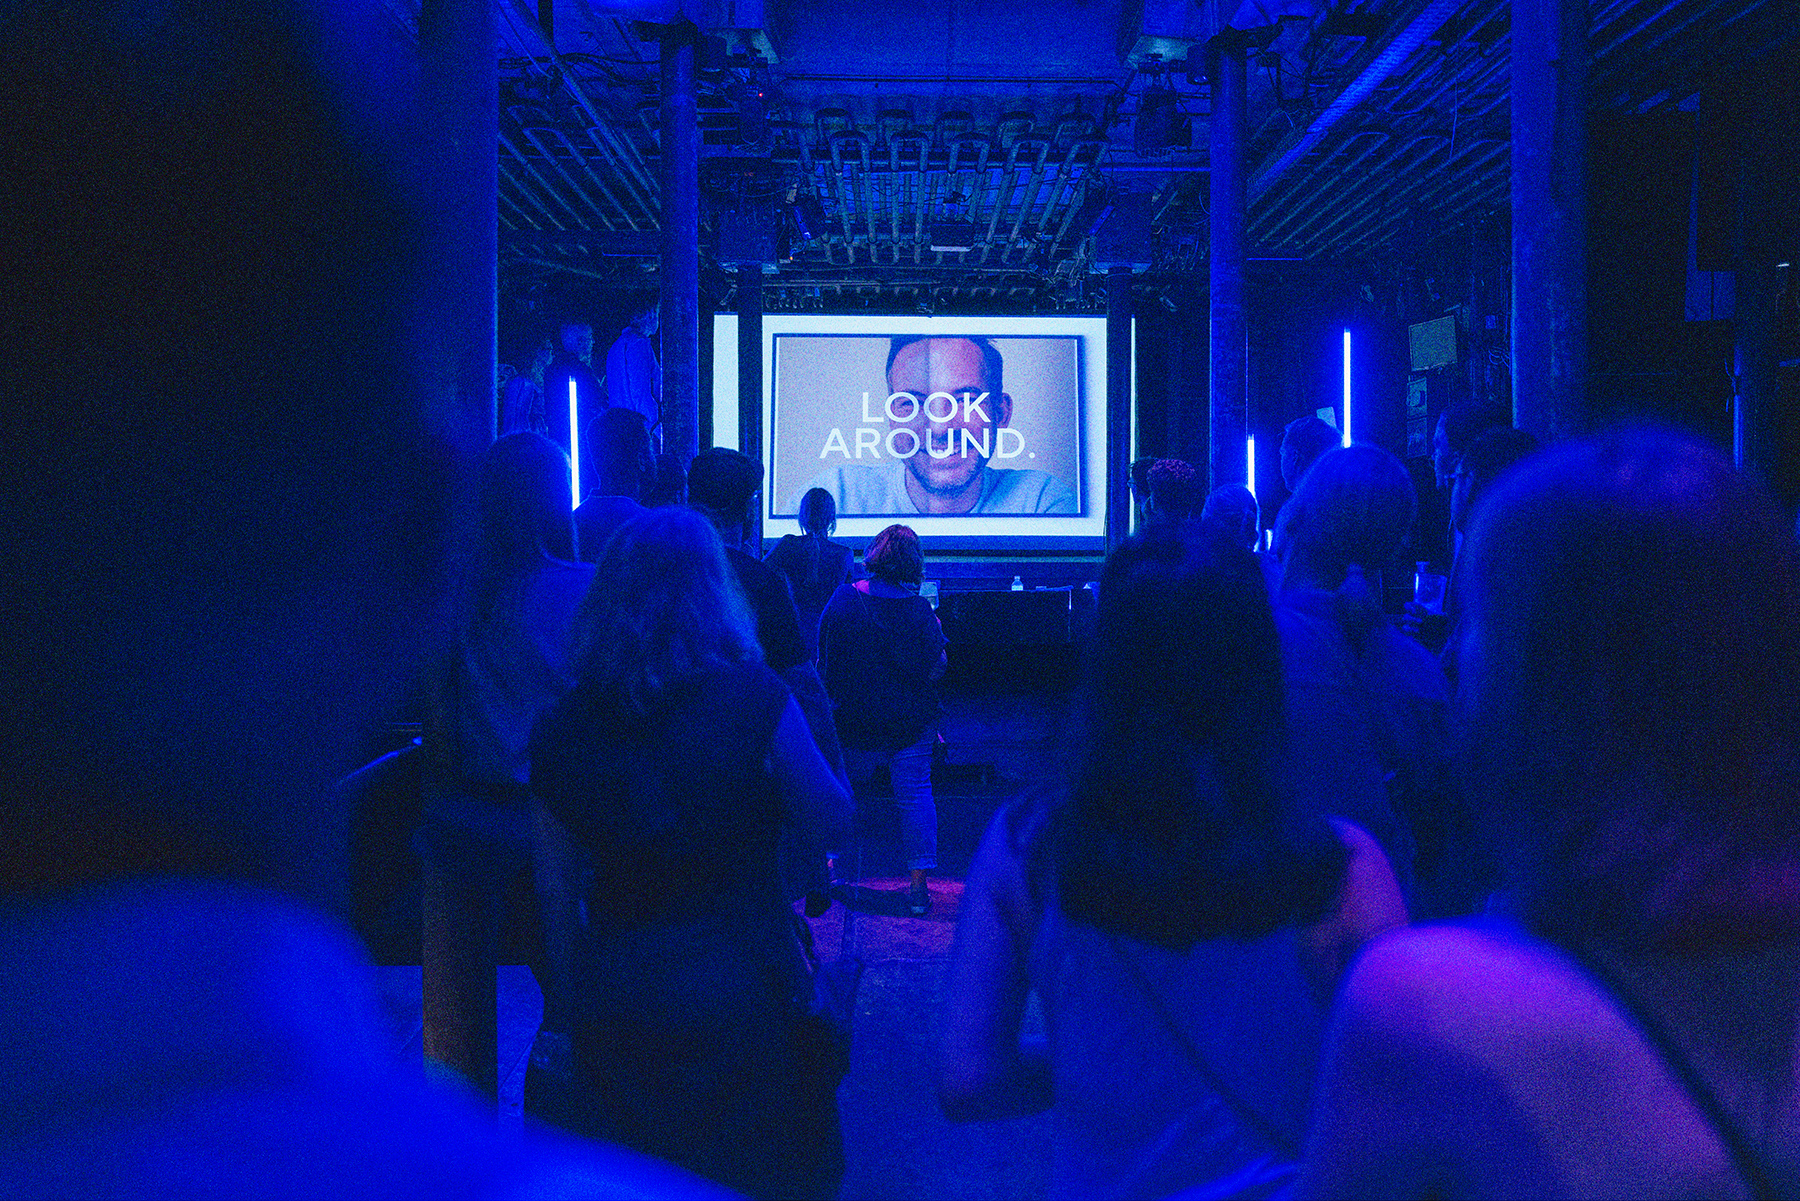 Eine Präsentation im blau beleuchteten Laderaum 4. Im Vordergrund stehen Menschen, die auf eine Leinwand im Hintergrund schauen, auf der "Look around" steht.